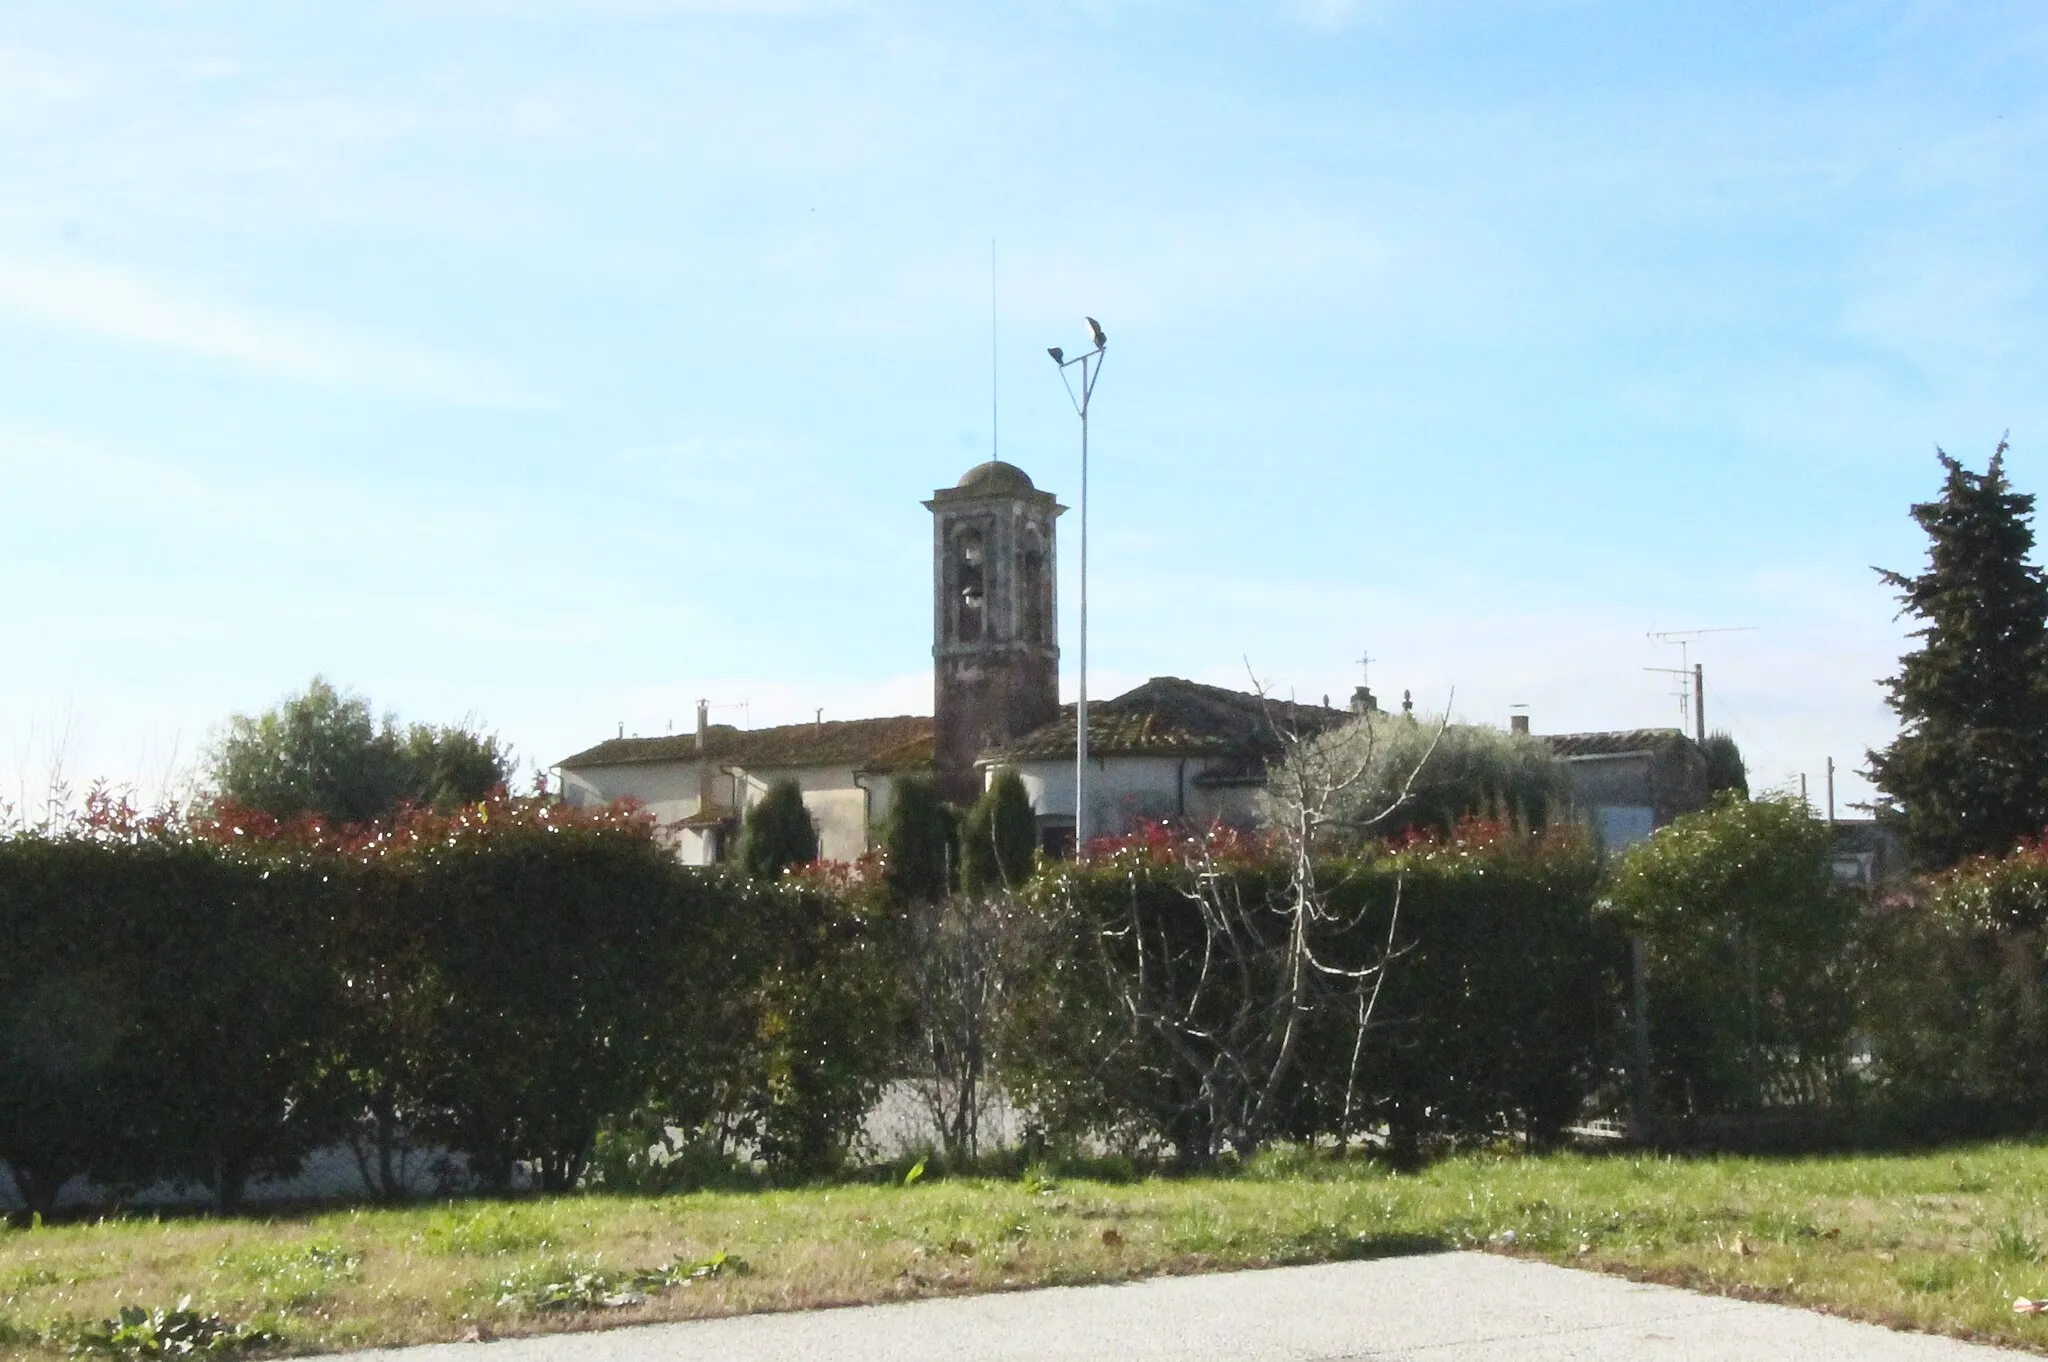 Photo showing: Church Sant'Andrea, Sant'Andrea in Pescaiola, hamlet of San Giuliano Terme, Province of Pisa, Tuscany, Italy